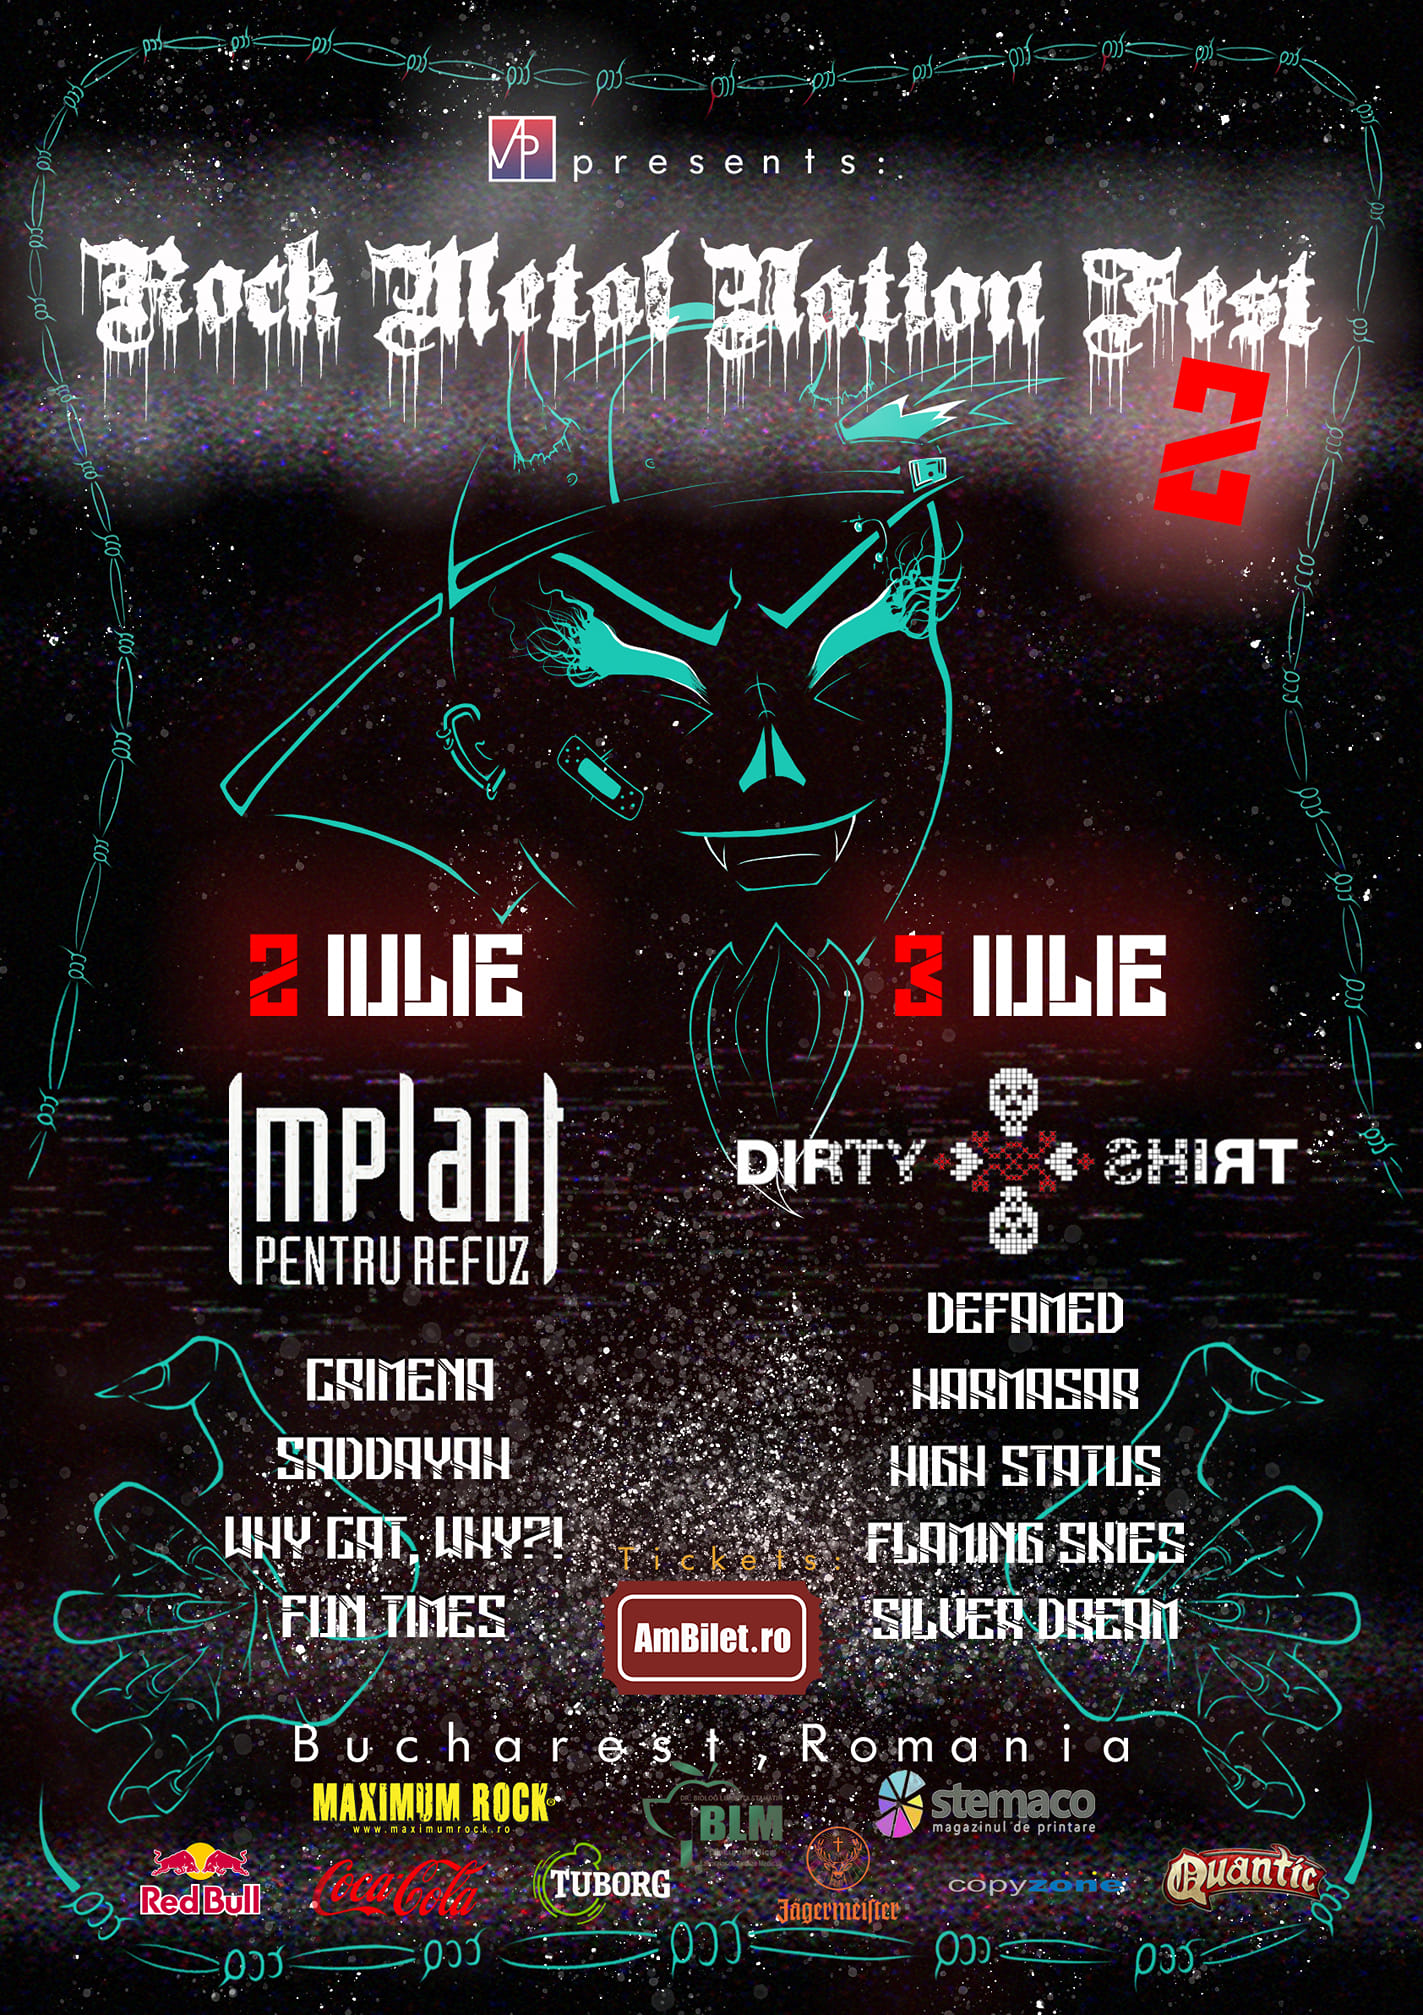 Rock Metal Nation Fest #2 în Club Quantic București (2/3 iulie)